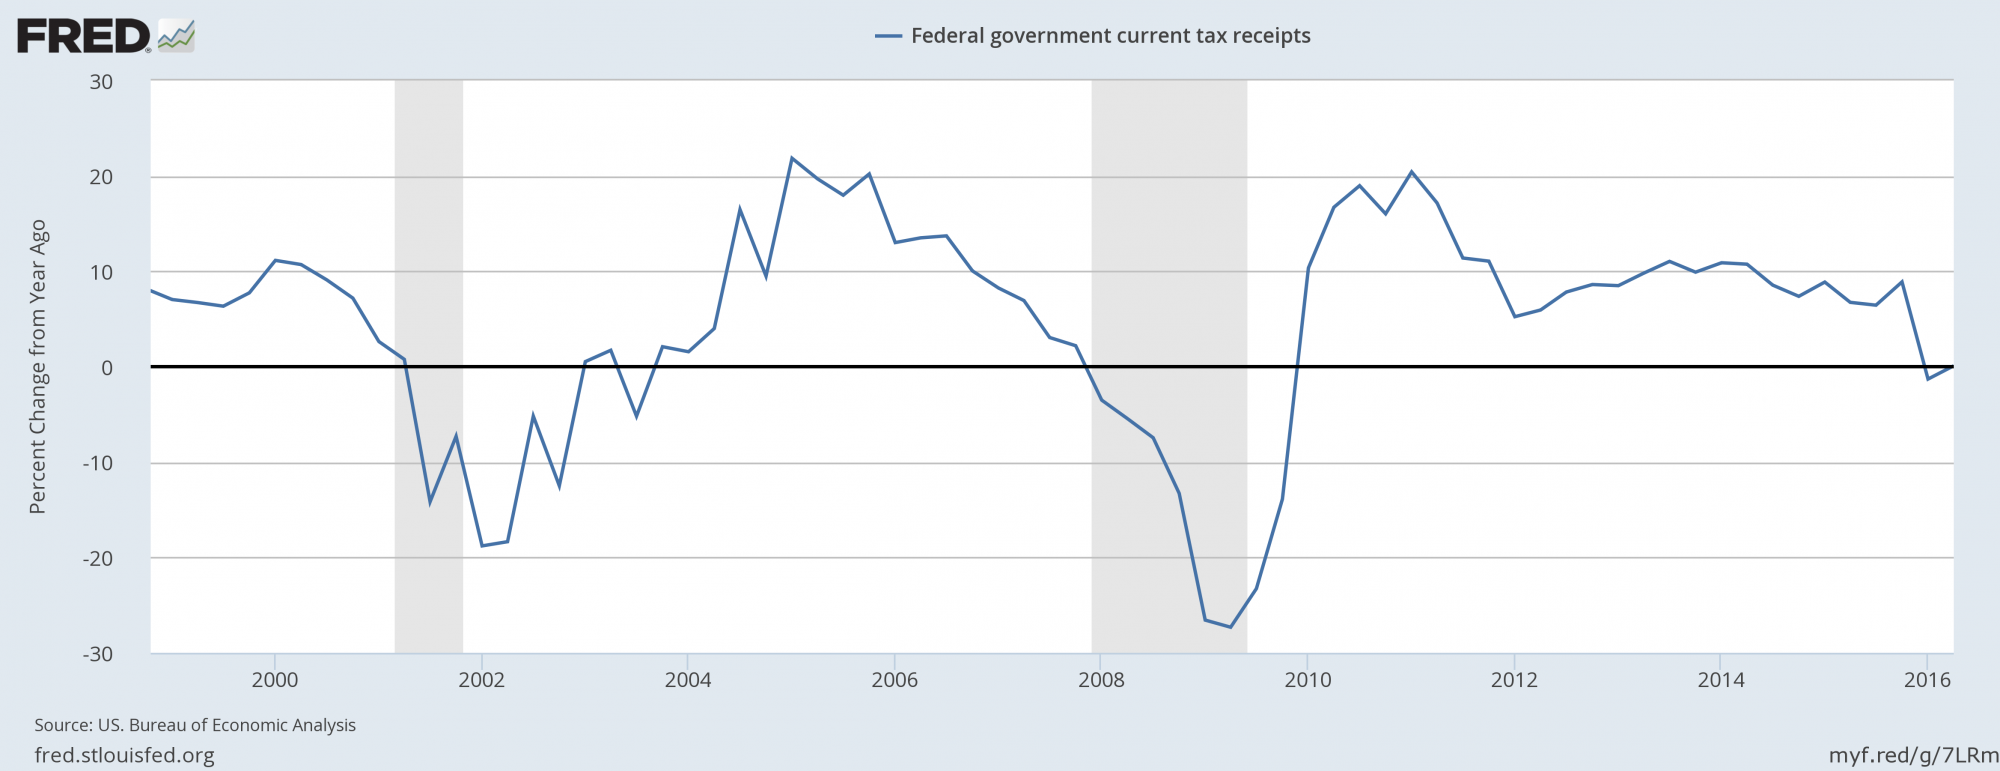 Статистика 2012 года. Ипотечный кризис 2008 года в США. Налоговые поступления США по годам. Экономический кризис 2008 года. Мировой кризис 2008-2010.